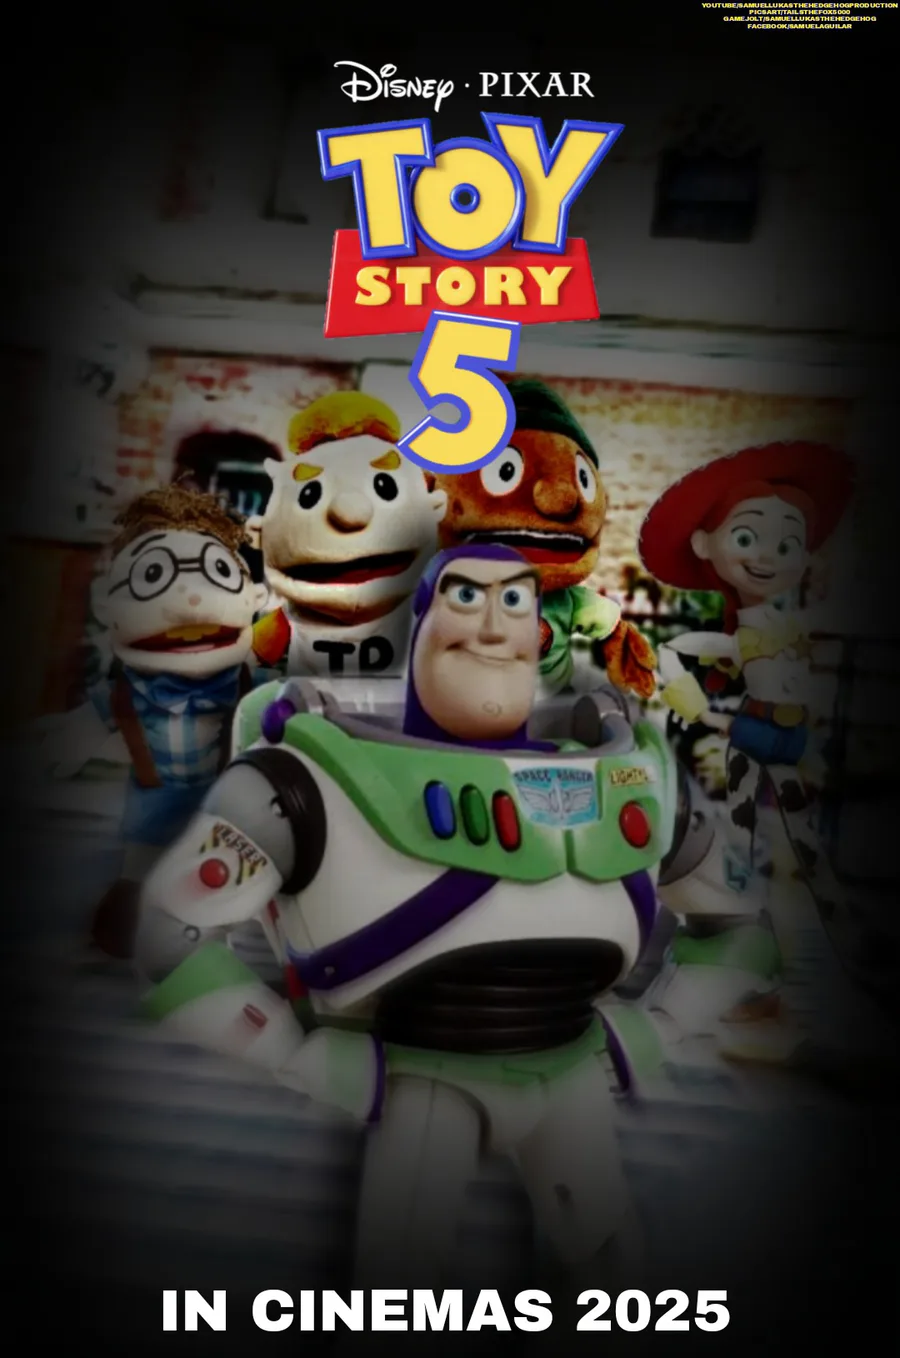 Toy story 5. o trailer do filme.2025 : r/ShitpostBR